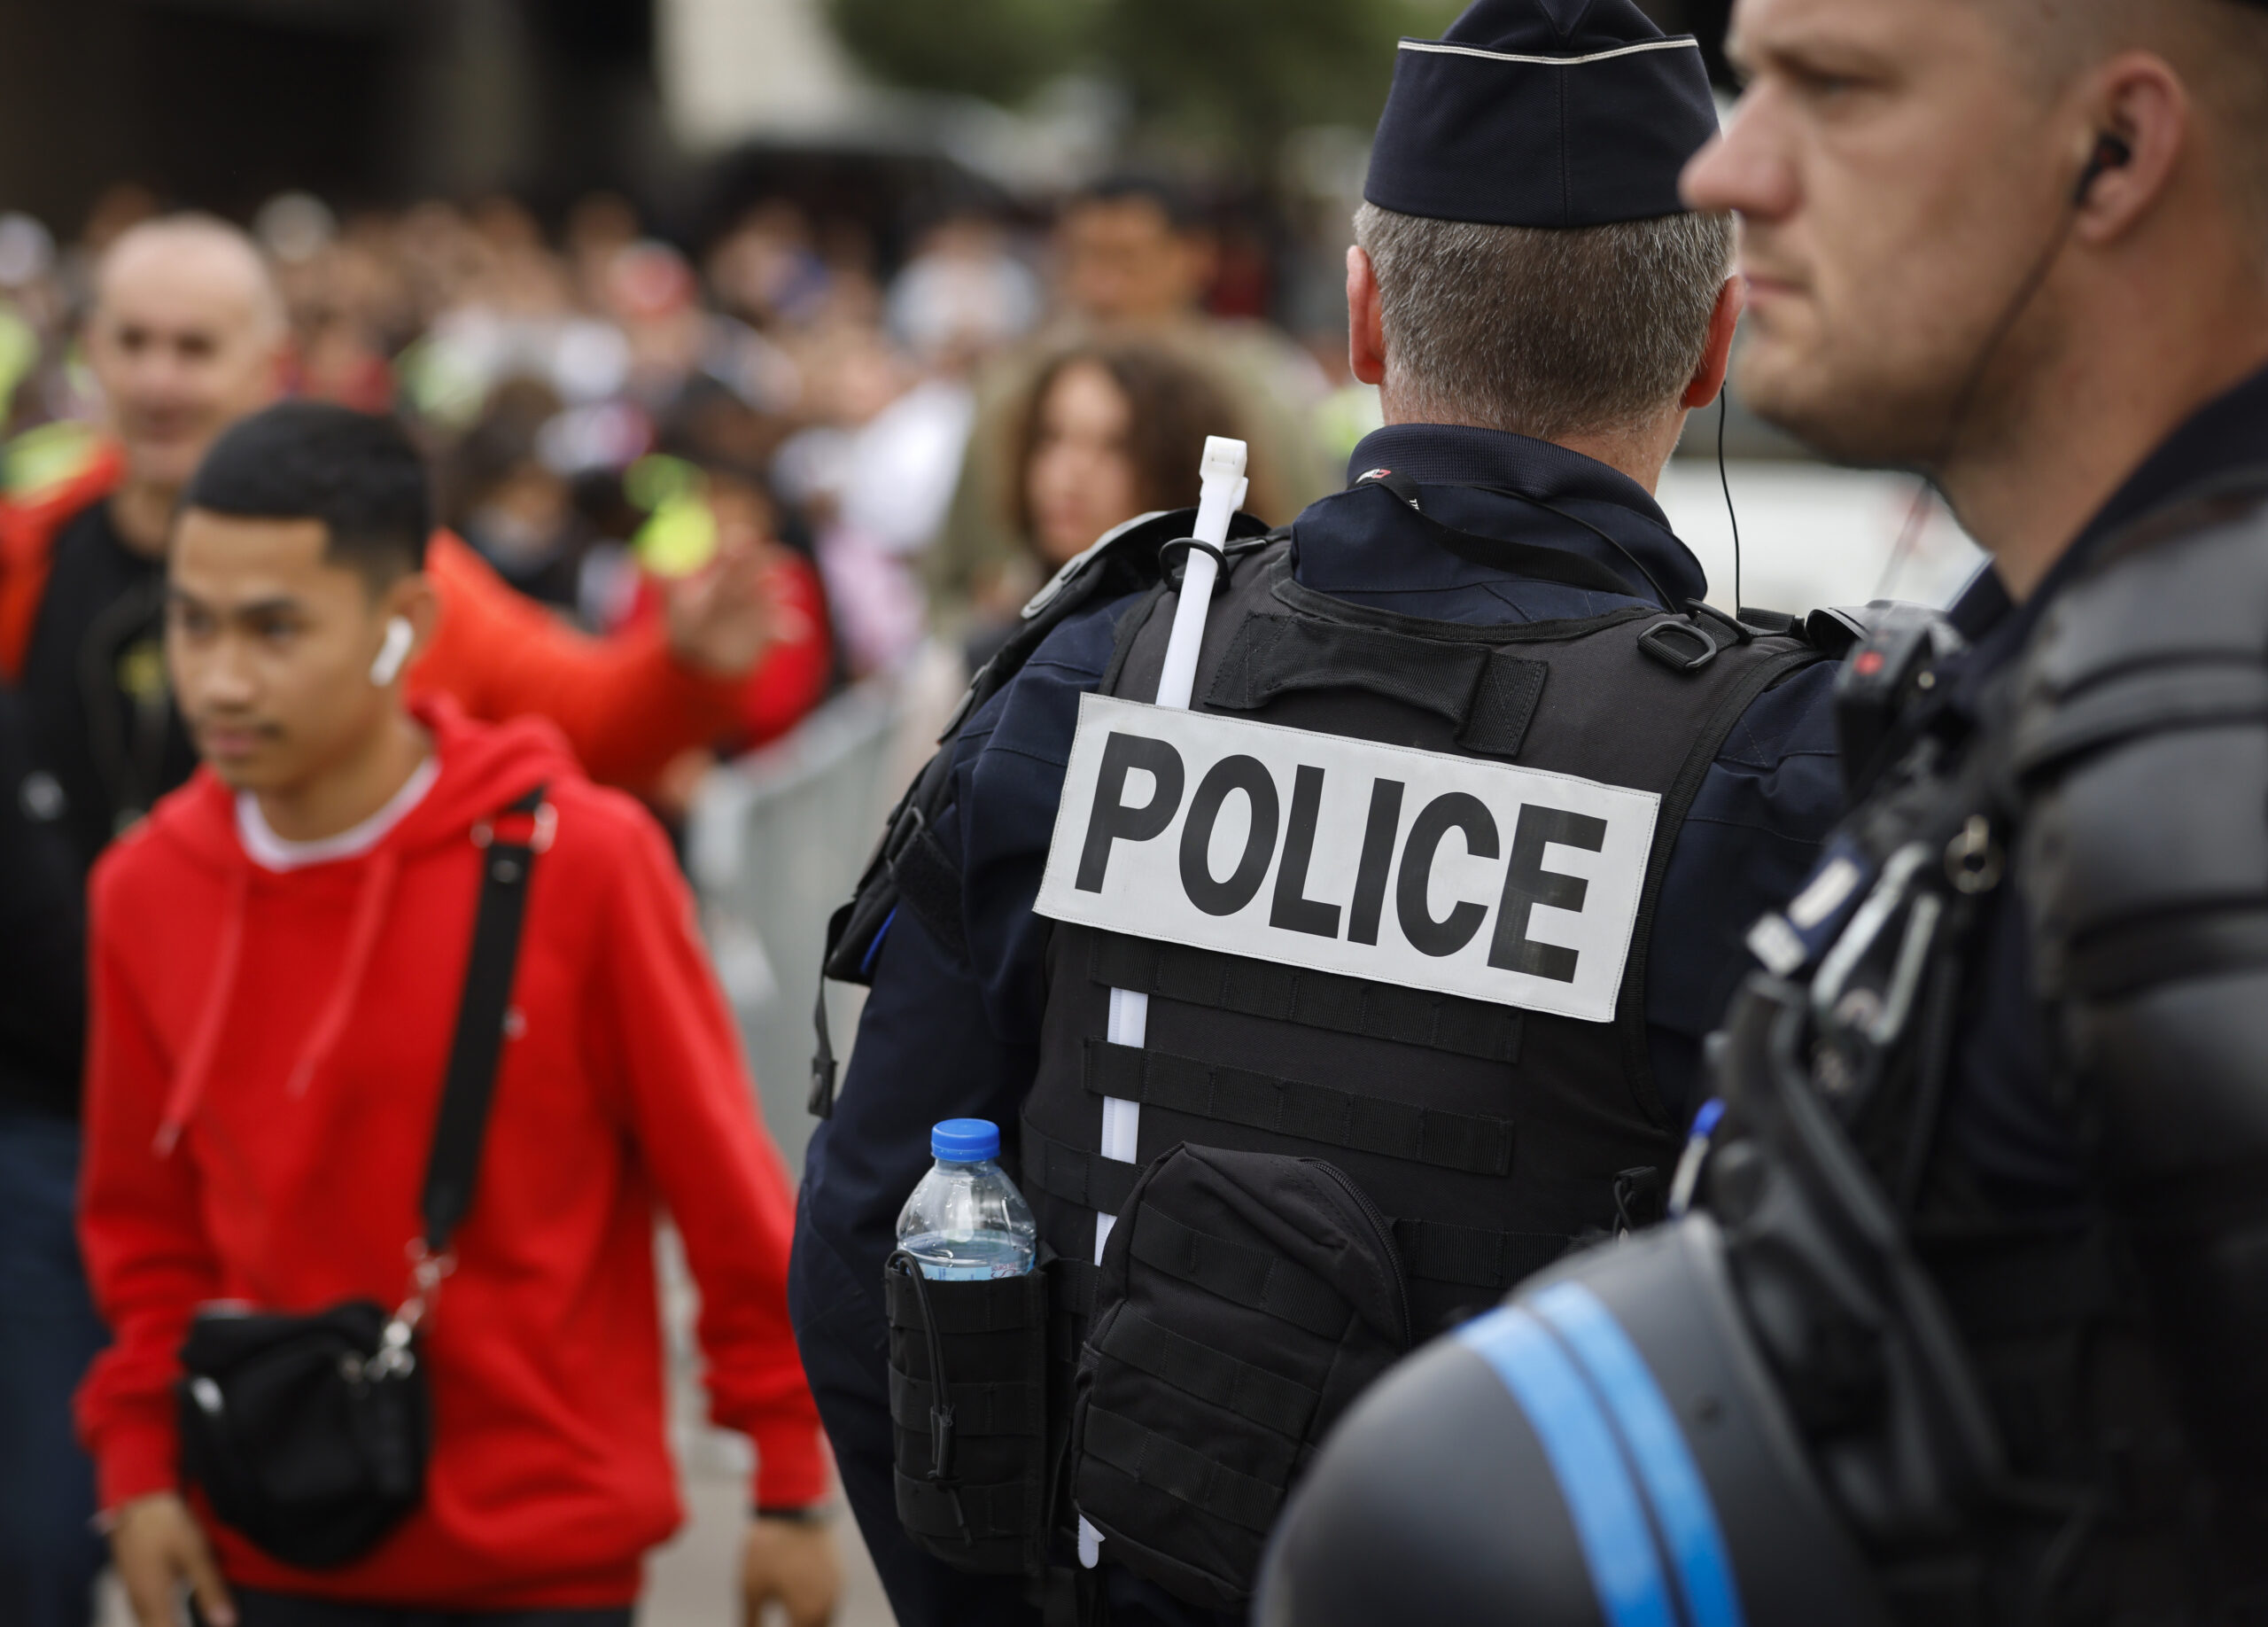 Παρίσι: Σε κρίσιμη κατάσταση η γυναίκα που απειλούσε και φώναζε «Αλλάχου Ακμπάρ» – Την πυροβόλησε η αστυνομία